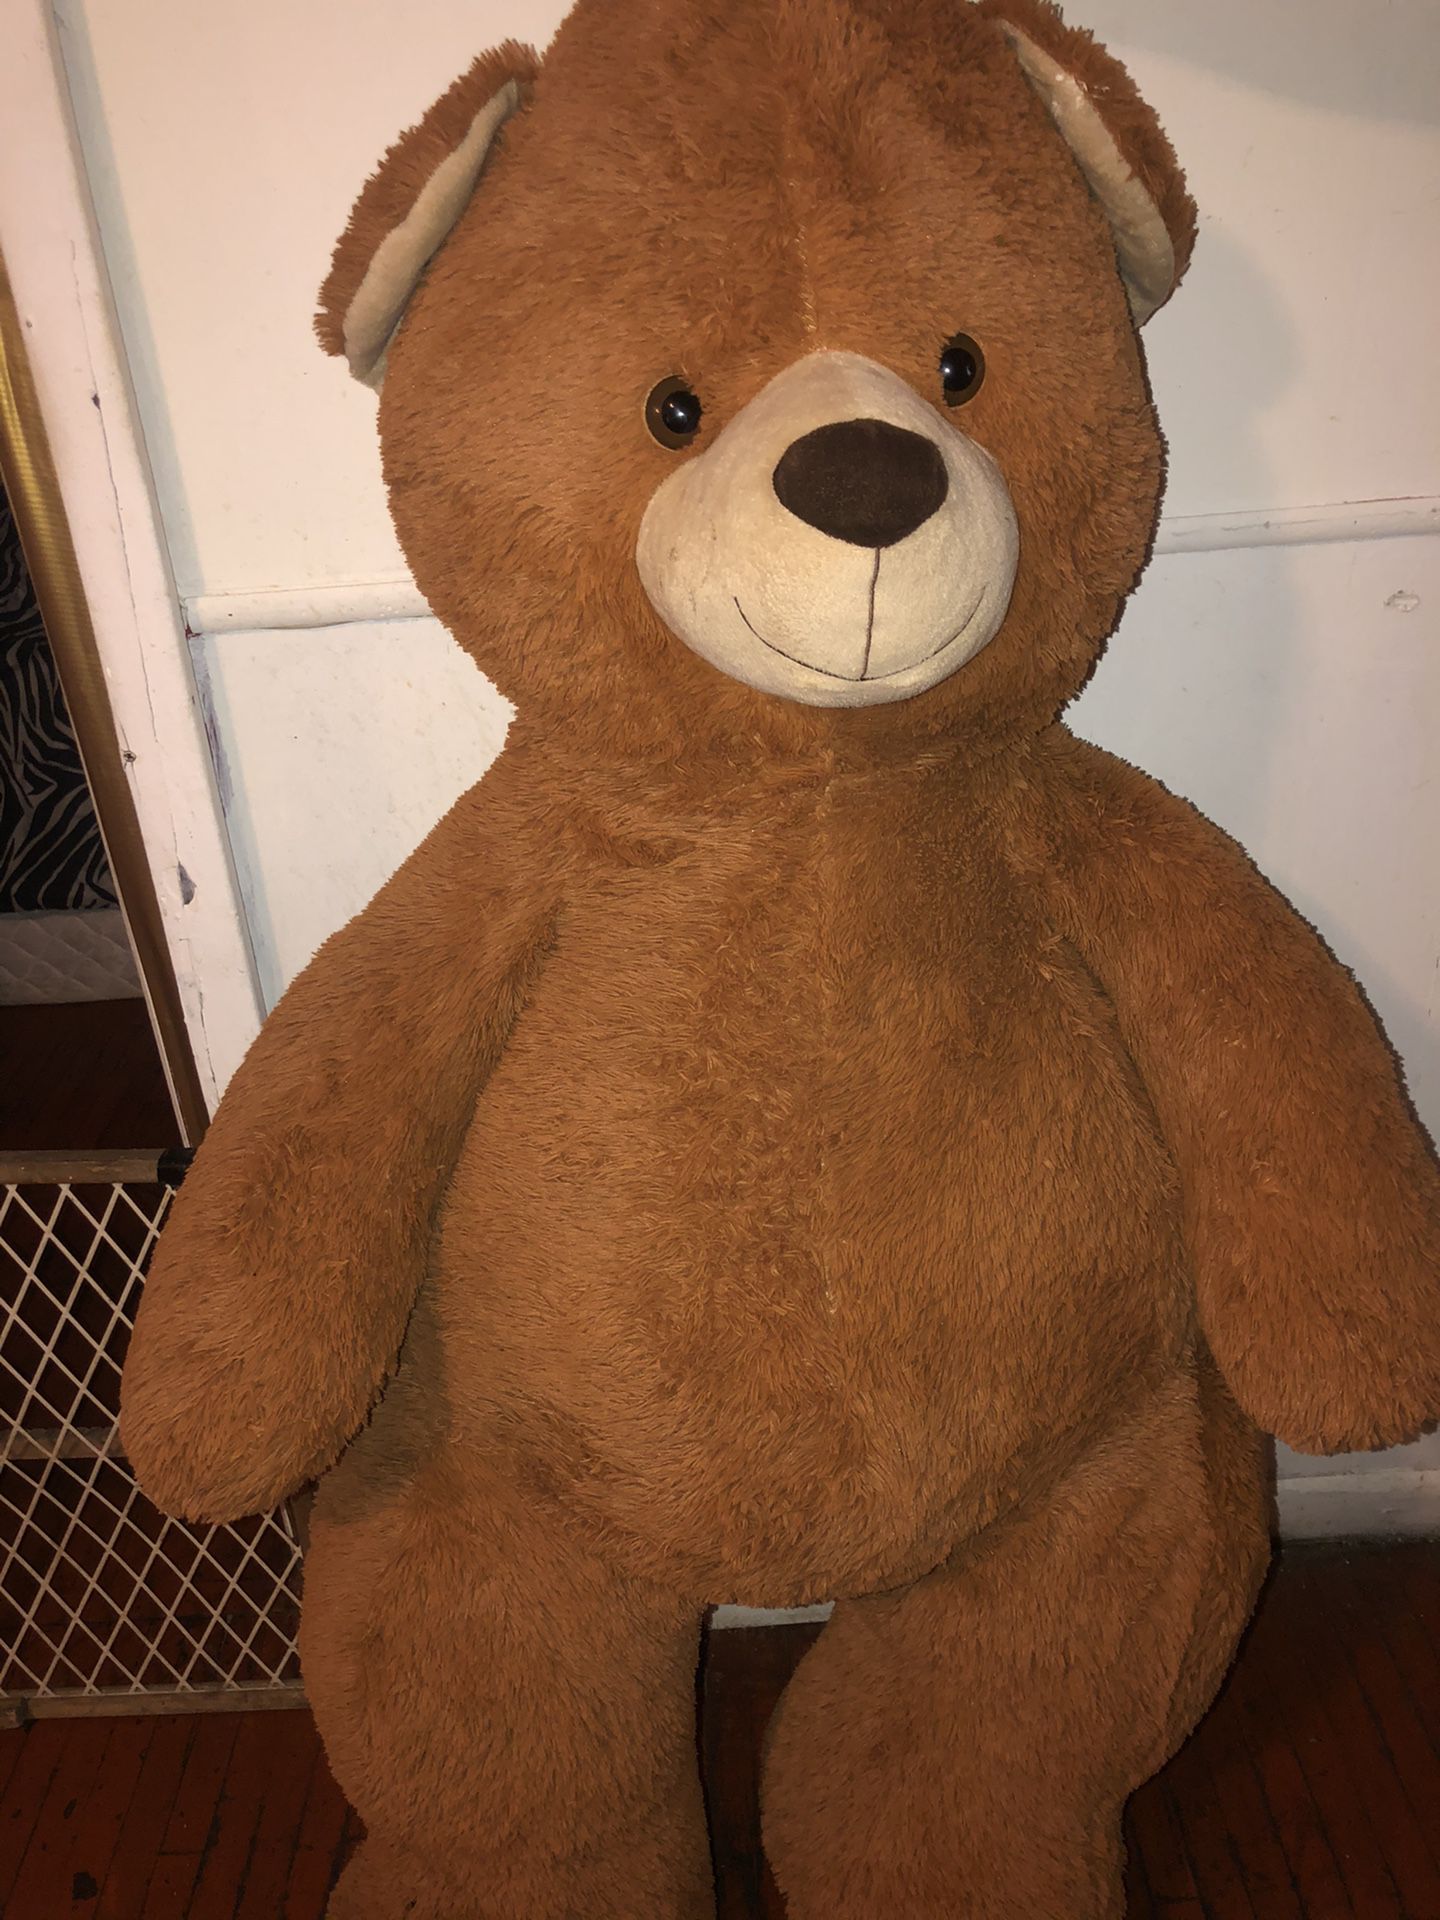 Giant stuffed teddy bear